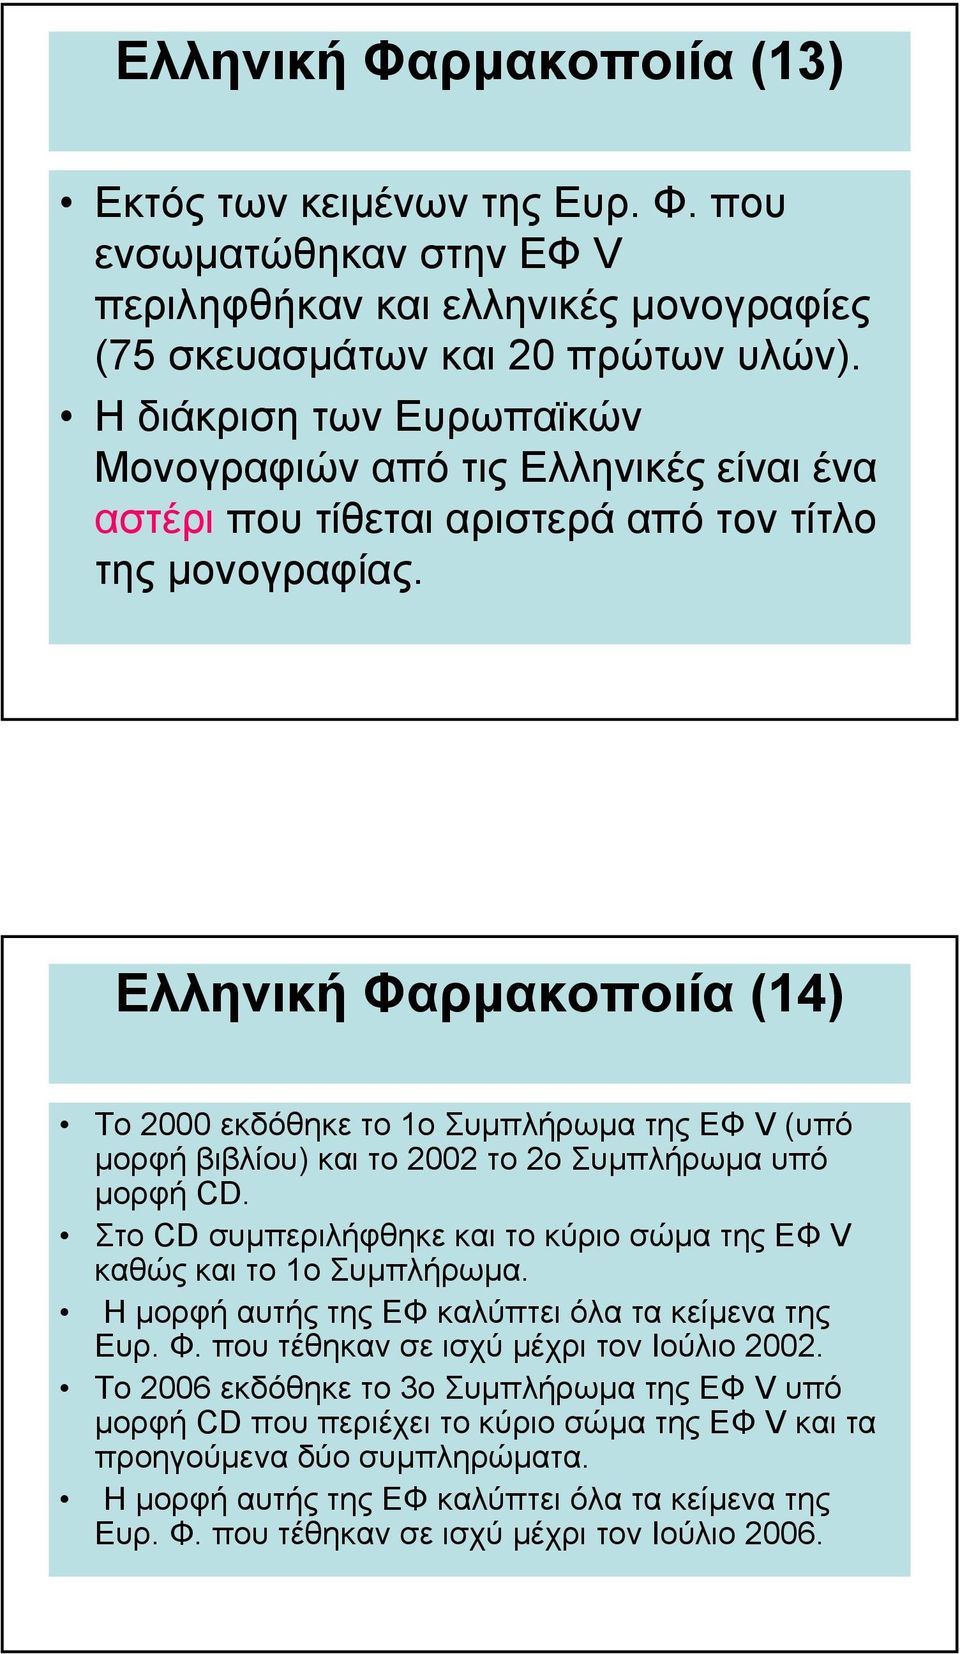 Ελληνική Φαρµακοποιία (14) Το 2000 εκδόθηκε το 1ο Συµπλήρωµα της ΕΦ V(υπό µορφή βιβλίου) και το 2002 το 2ο Συµπλήρωµα υπό µορφή CD.